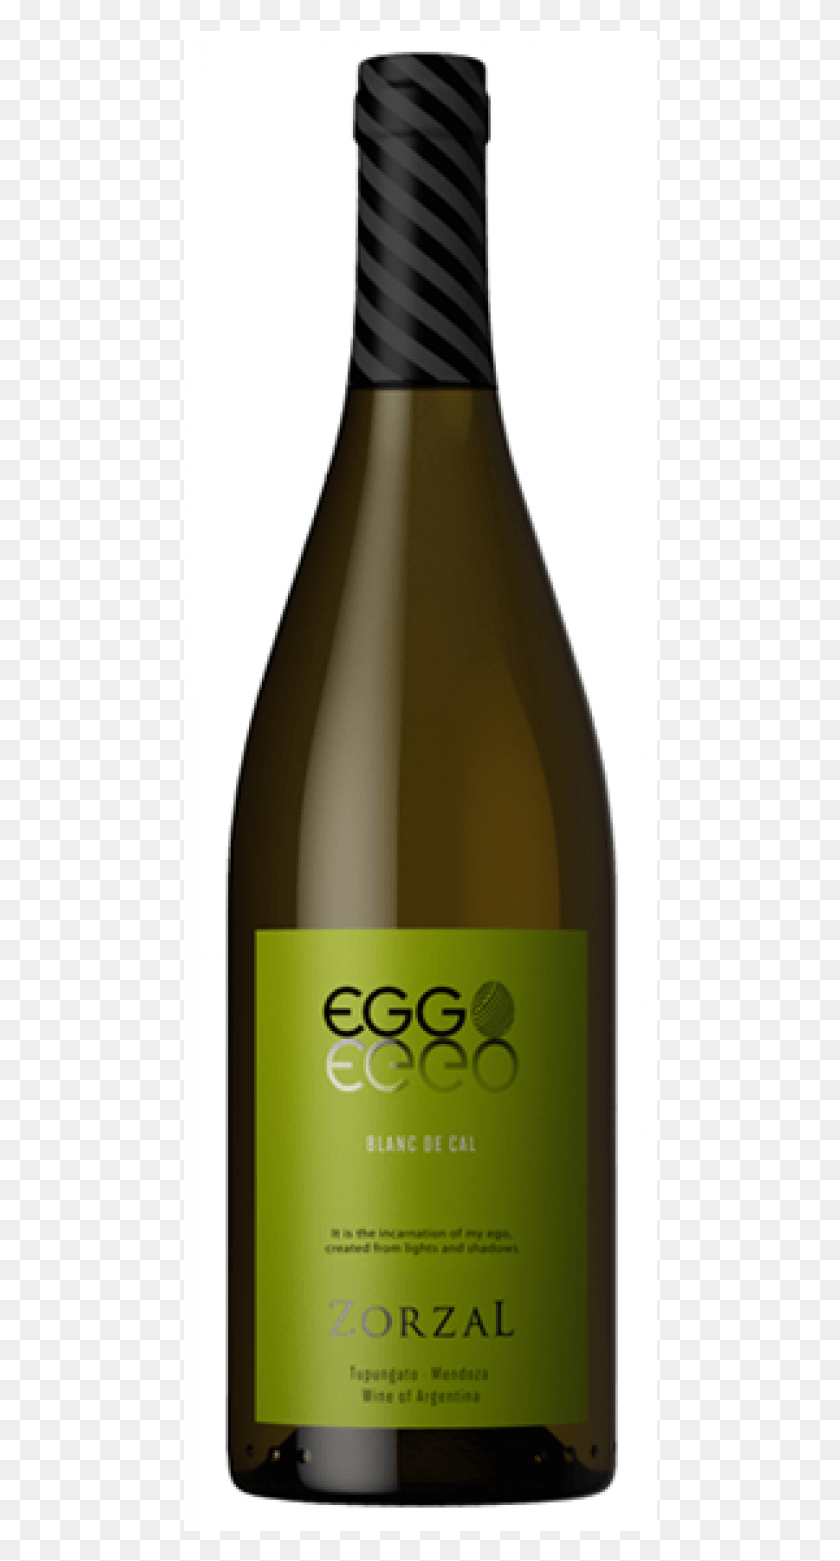 474x1501 Descargar Pngzorzal Eggo Blanc De Cal Sauvignon Blanc Botella De Vidrio, Alcohol, Bebida, Bebida Hd Png